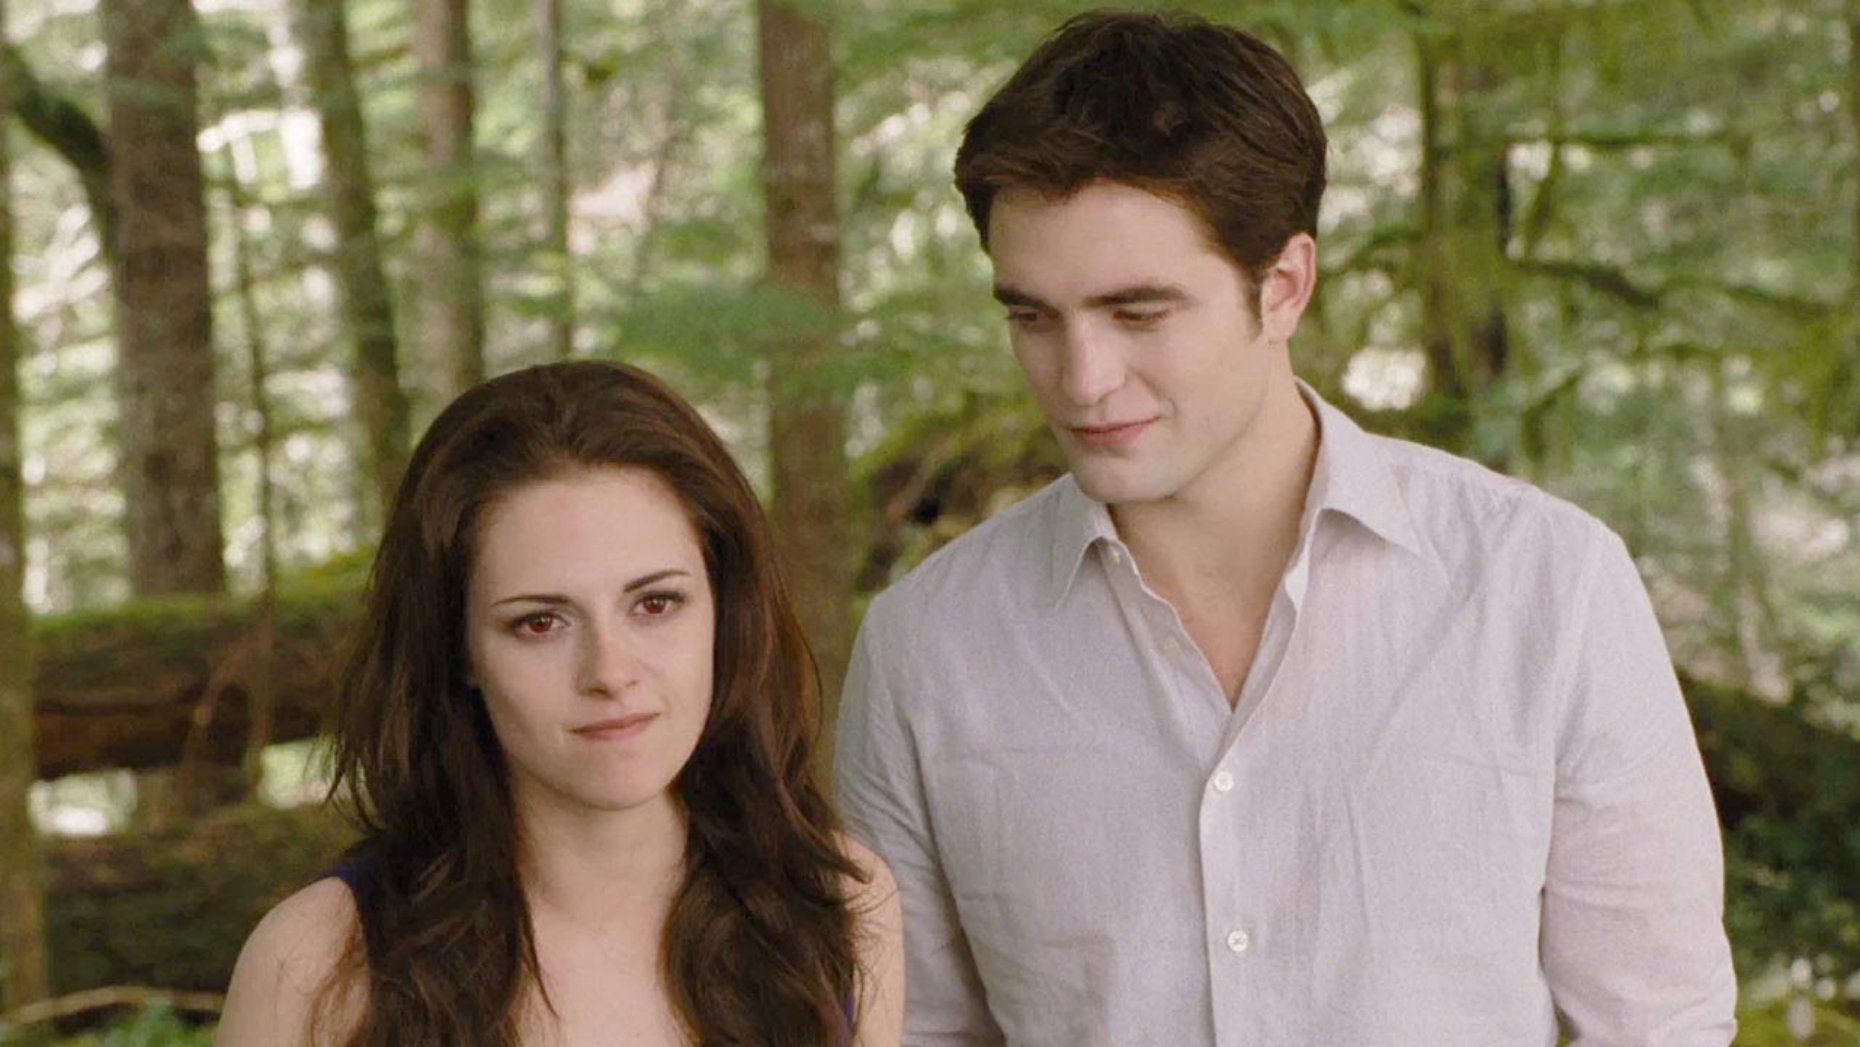 <p>Bien que ce volet soit plus divertissant que d’autres volets de la franchise <em>Twilight</em>, ce <a href="https://www.cine-histoire.ca/film/the-twilight-saga-breaking-dawn-part-ii/" rel="noreferrer noopener">film de 2012</a> qui suit les efforts de Bella (Kristen Stewart) et d’Edward (Robert Pattinson) pour protéger Renesmee, leur nouveau-née vampire, des dangereux Volturi, s’est <a href="https://hollywoodpq.com/the-twilight-saga-breaking-down-part-2-critique-du-film/" rel="noreferrer noopener">tout de même fait démolir</a>. Comme le pointe <a href="https://www.rollingstone.com/movies/movie-reviews/the-twilight-saga-breaking-dawn-part-2-127011/" rel="noreferrer noopener">Peter Travers, critique du magazine</a><a href="https://www.rollingstone.com/movies/movie-reviews/the-twilight-saga-breaking-dawn-part-2-127011/" rel="noreferrer noopener"><em> Rolling Stone</em></a>, dire que le dernier volet de la série est le meilleur de tous, c’est comme dire qu’un rhume banal est préférable à la grippe porcine.</p>